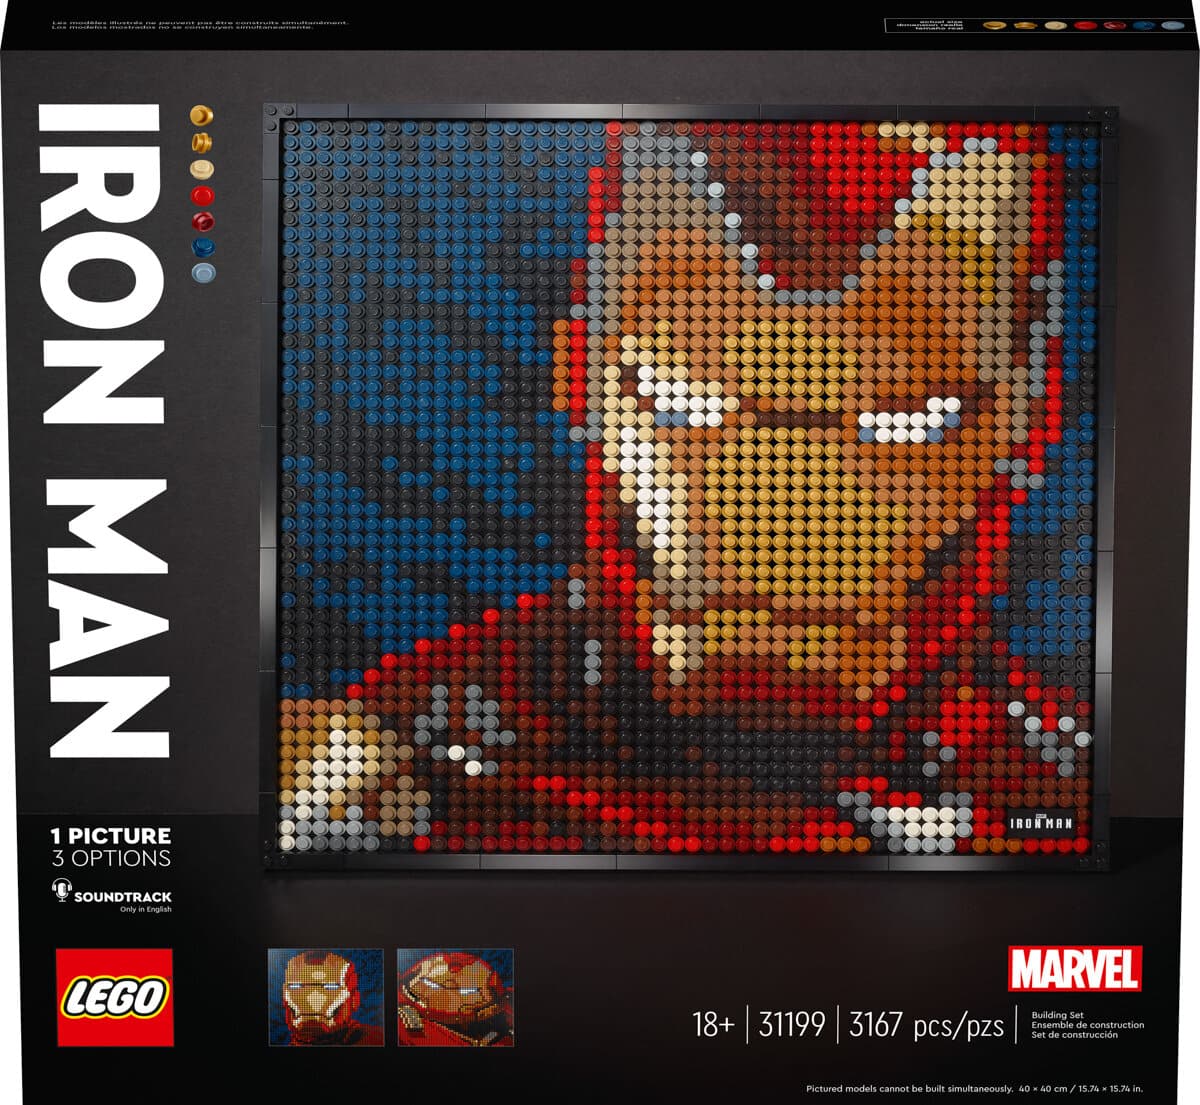 Nouvelle gamme de tableaux LEGO Art : l'annonce officielle des mosaïques  Marylin, The Beatles, Iron Man et Star Wars - HelloBricks